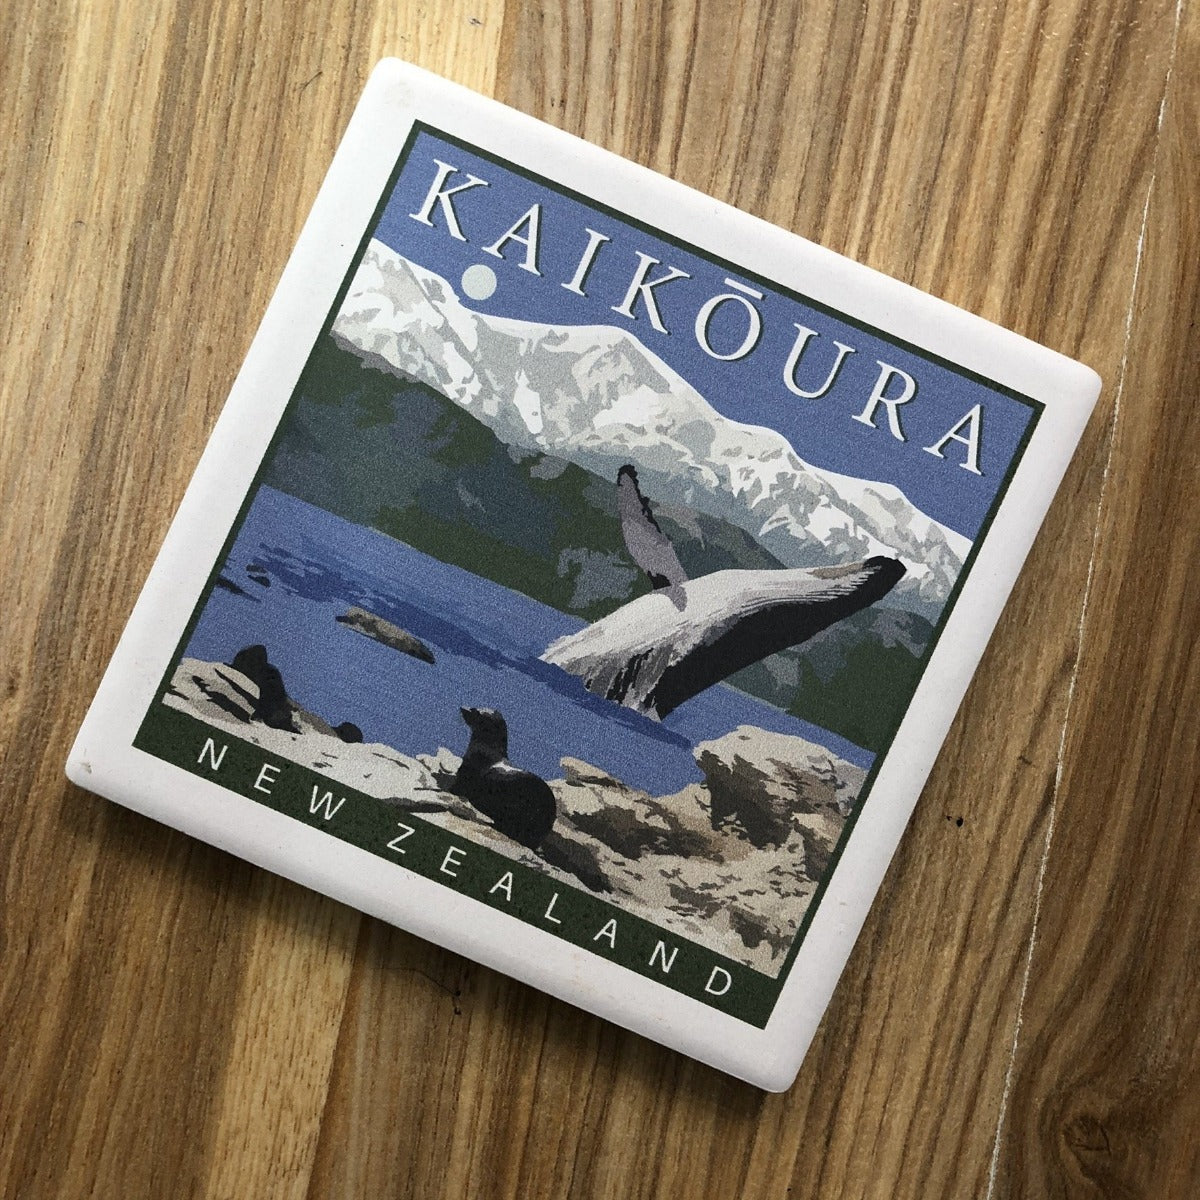 jade kiwi kaikoura new zealand coasters